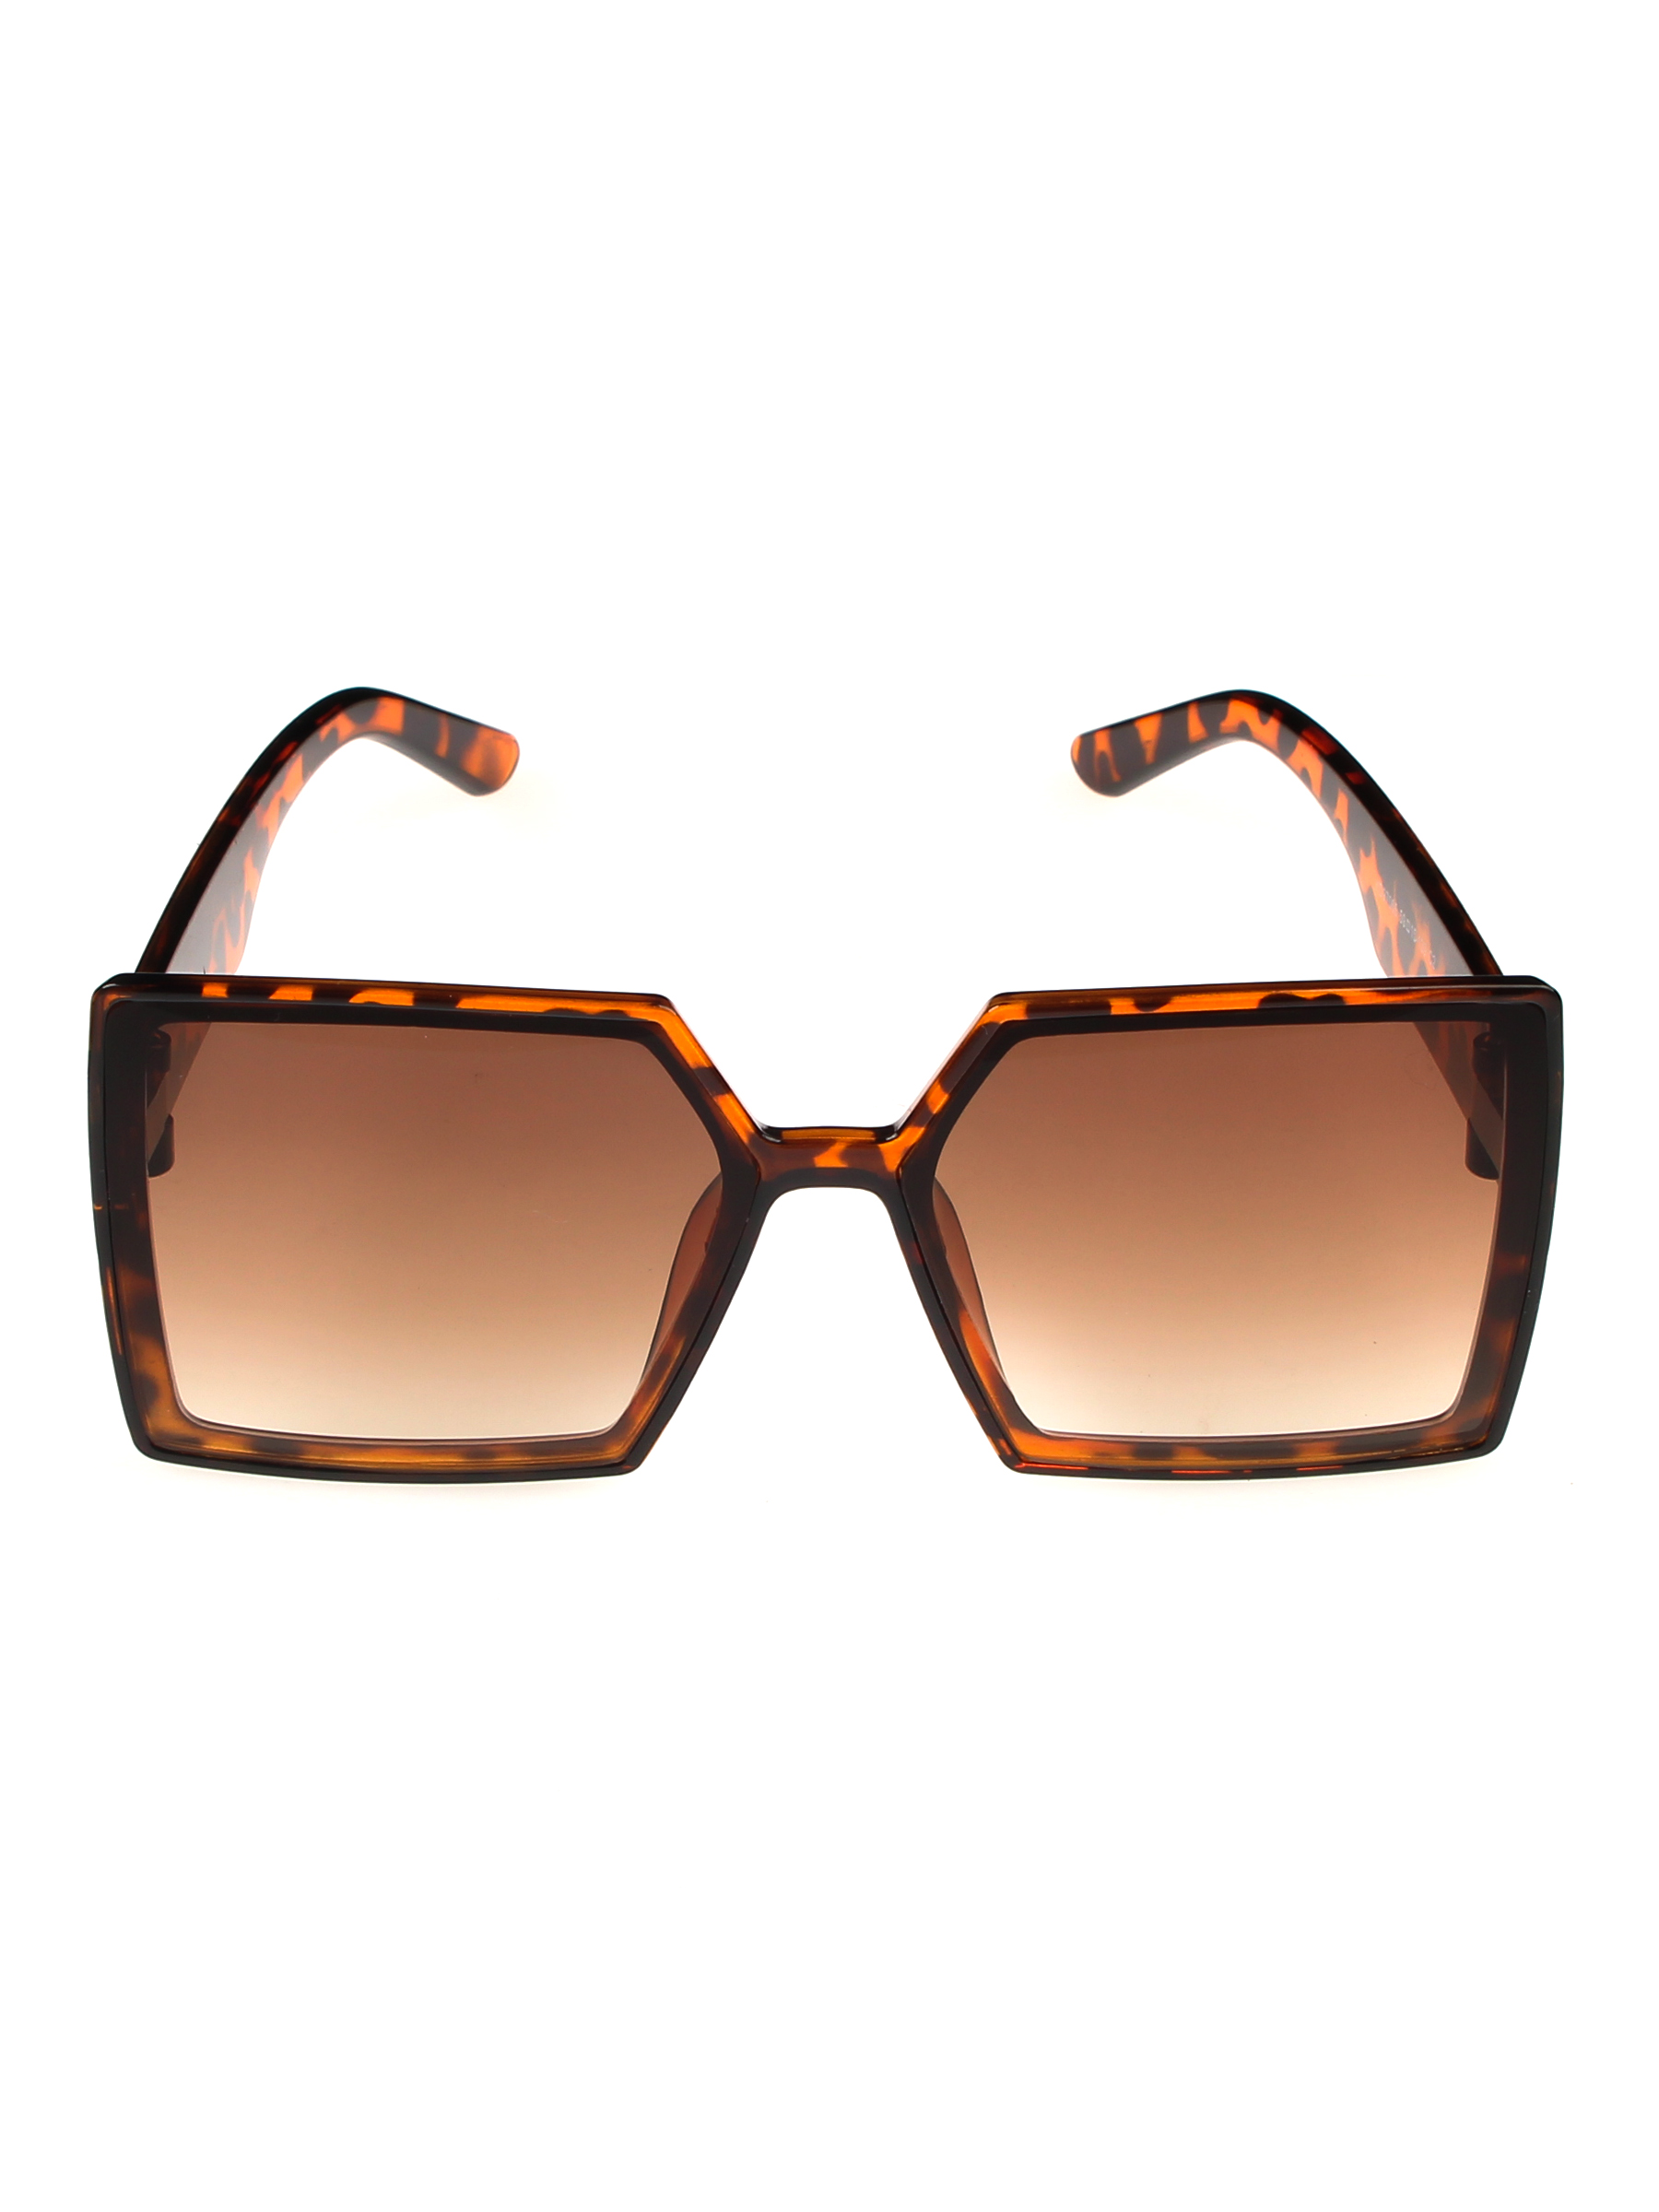 фото Солнцезащитные очки женские pretty mania ndp015 коричневые/леопардовые